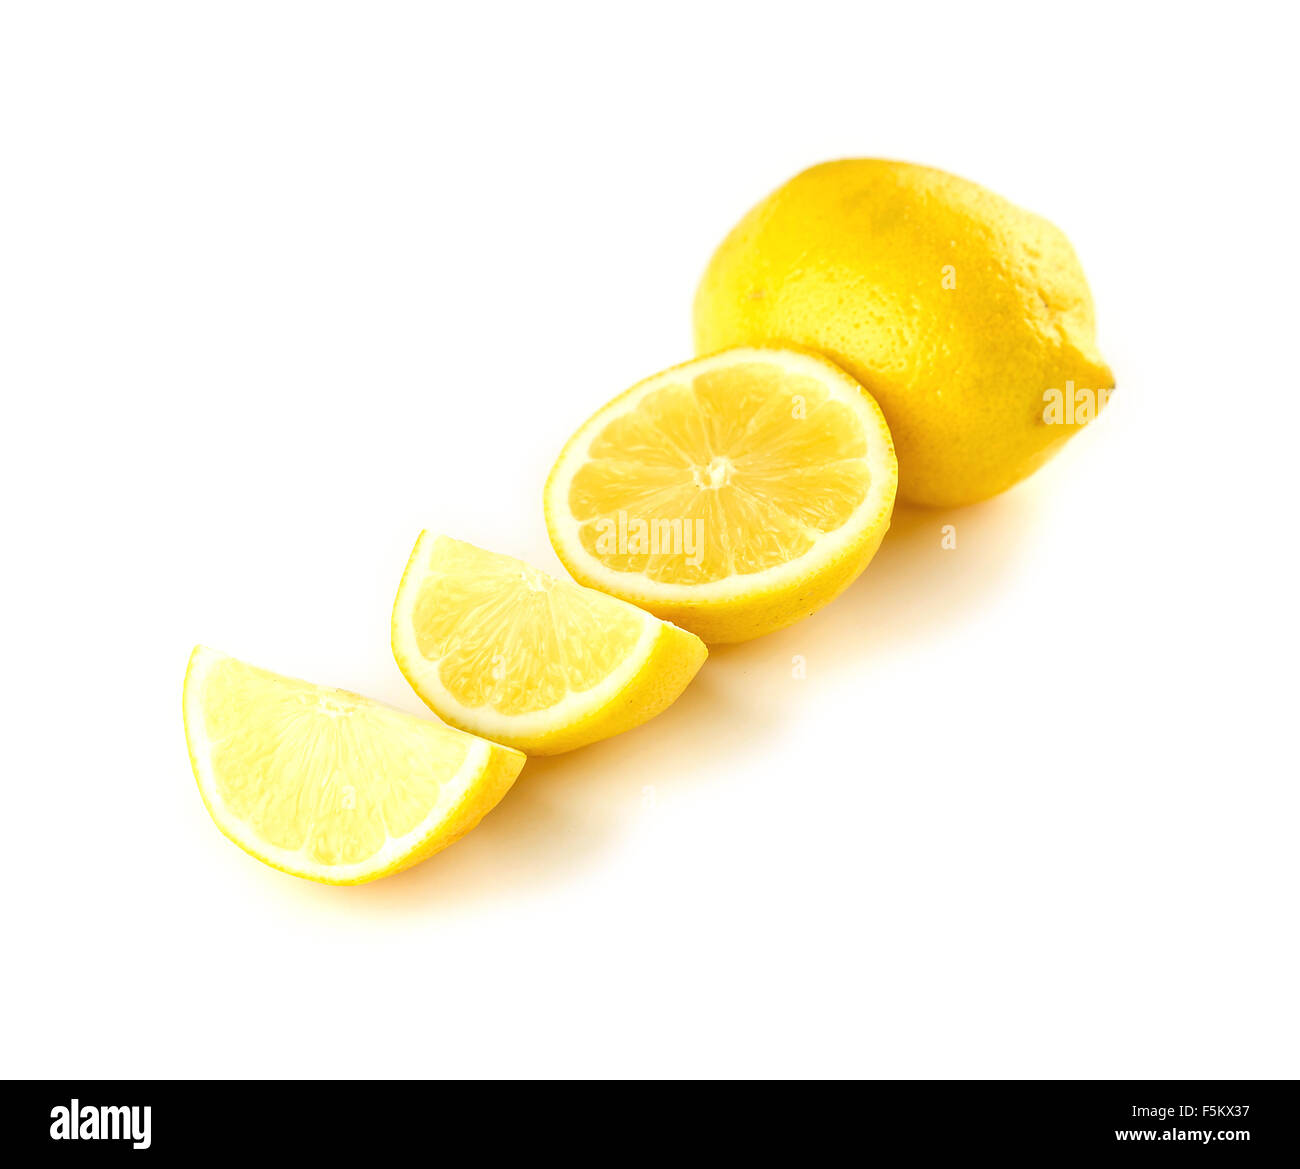 Quarter, half and full lemons isolated on white Stock Photo